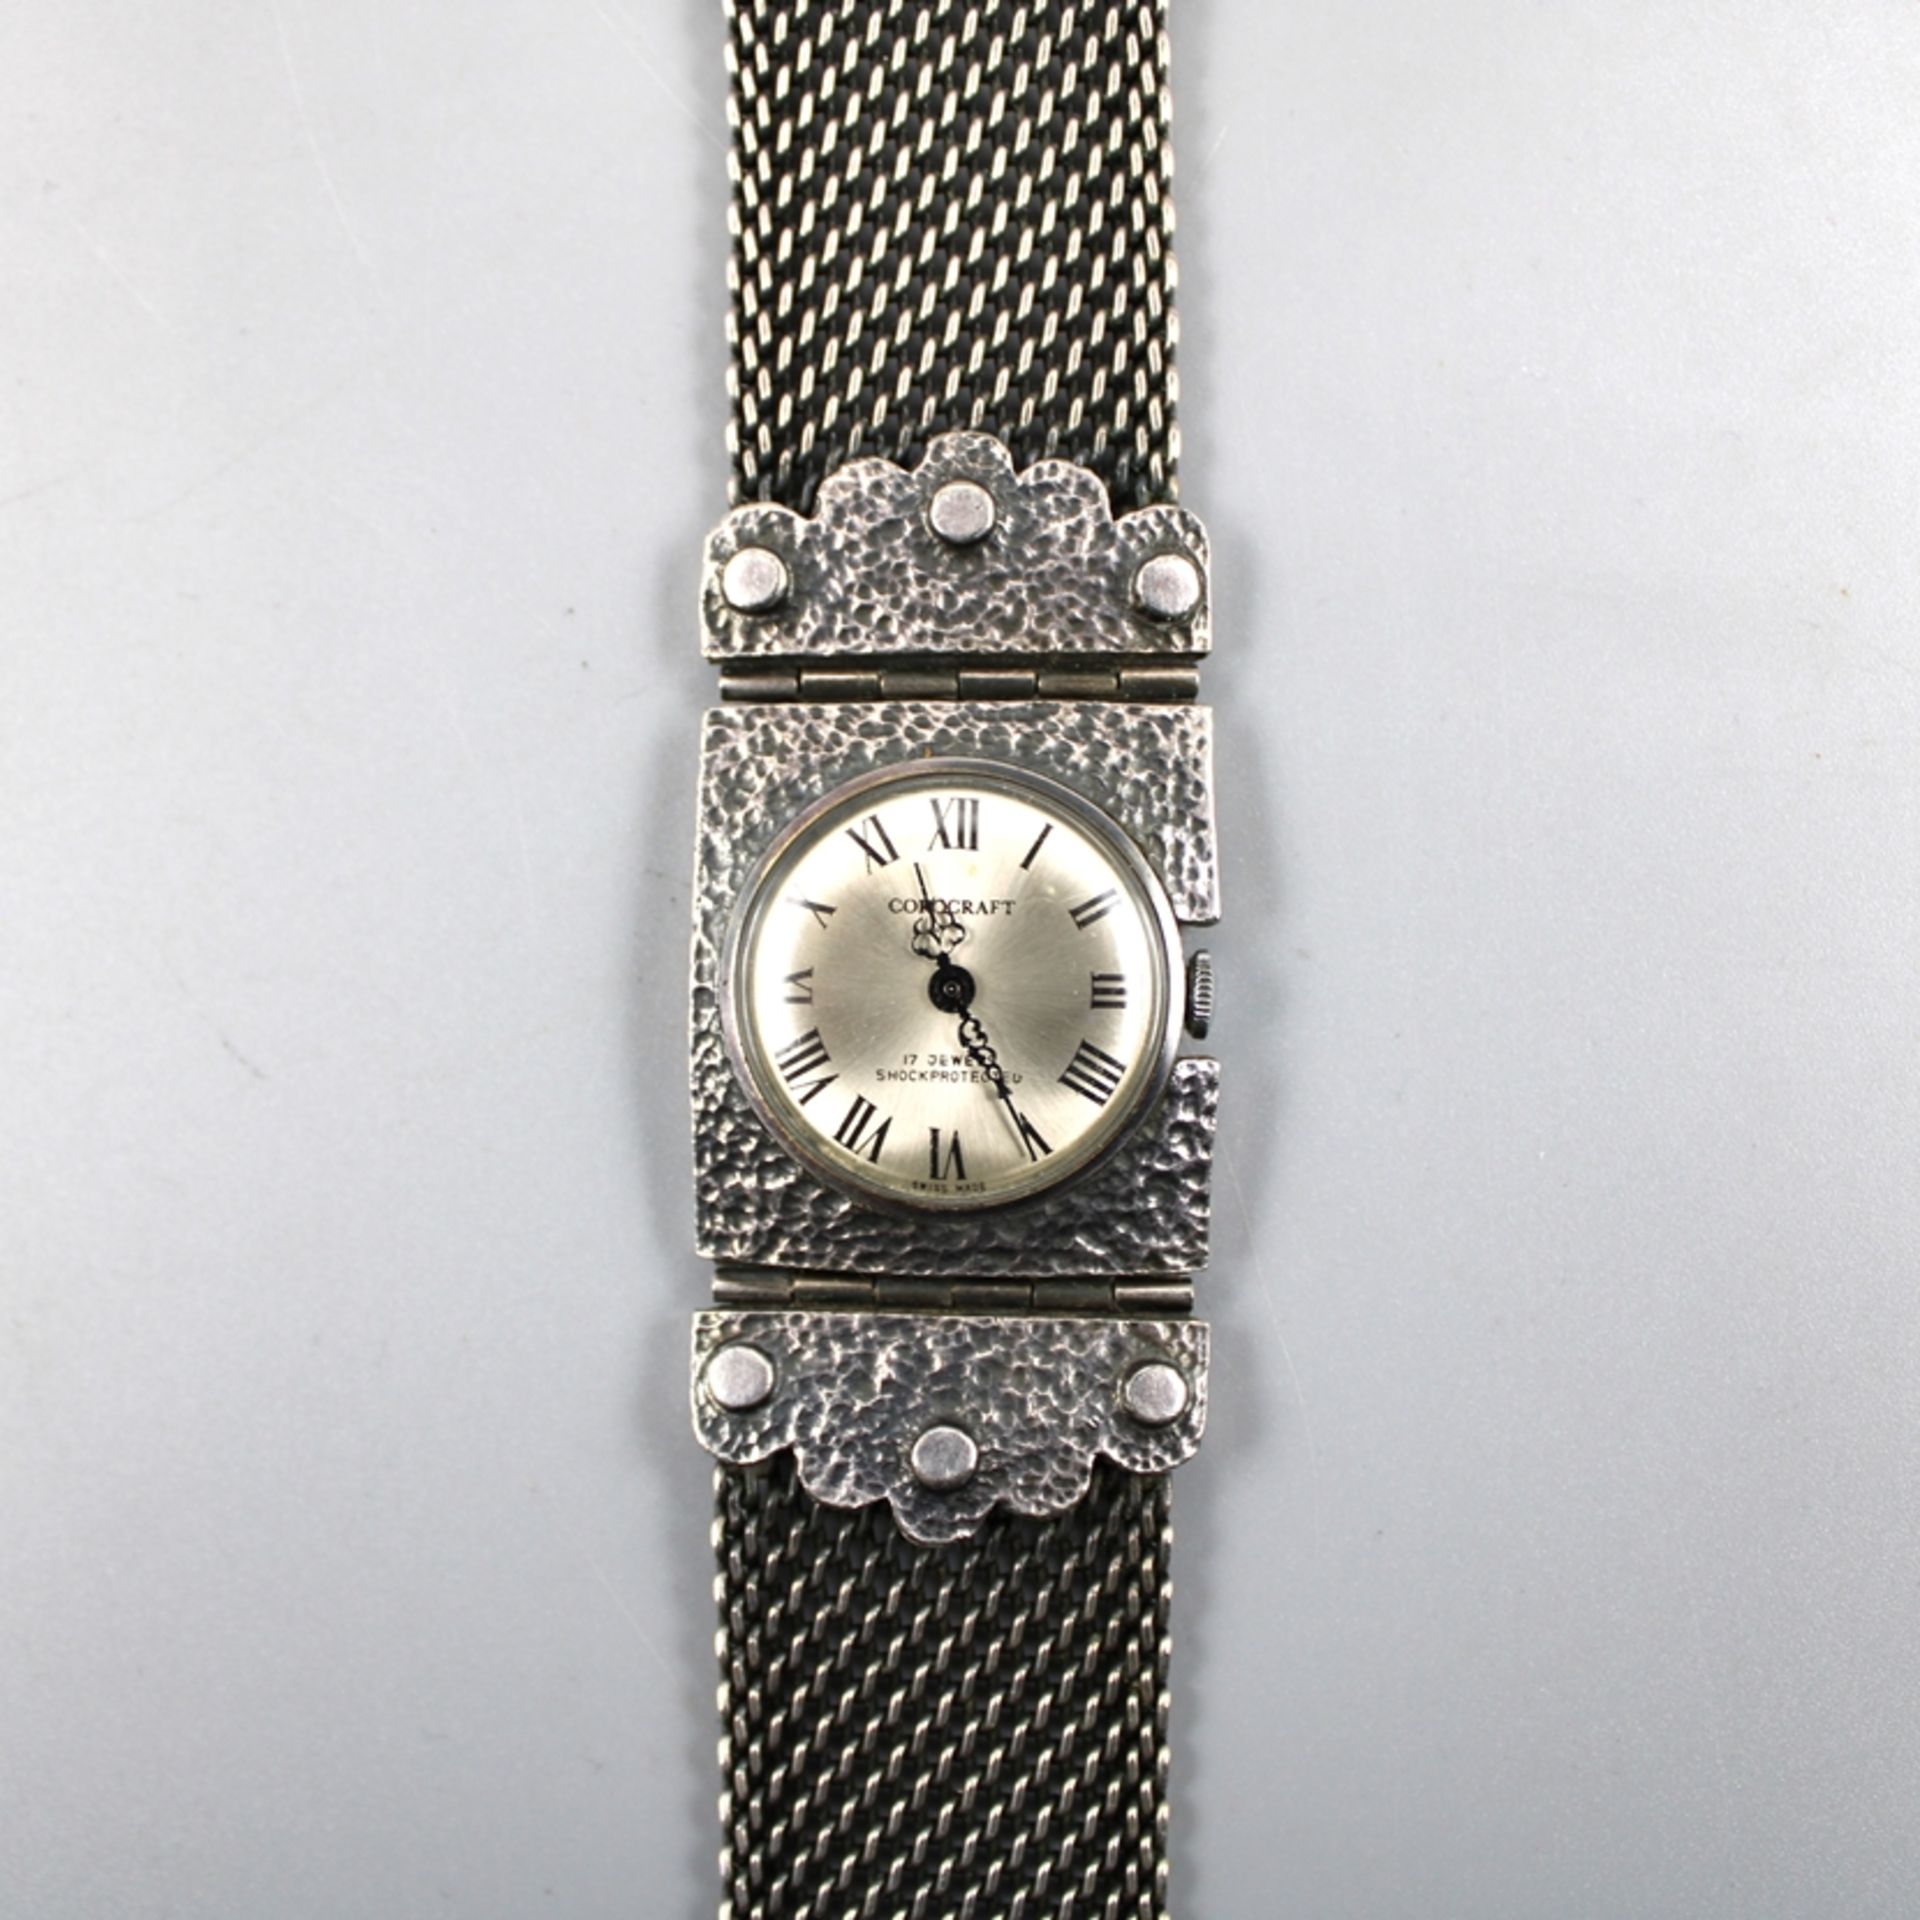 Corocraft Damenuhr Handaufzug, die Uhr läuft an (Ganggenauigkeit u. Laufdauer nicht geprüft) - Bild 2 aus 3